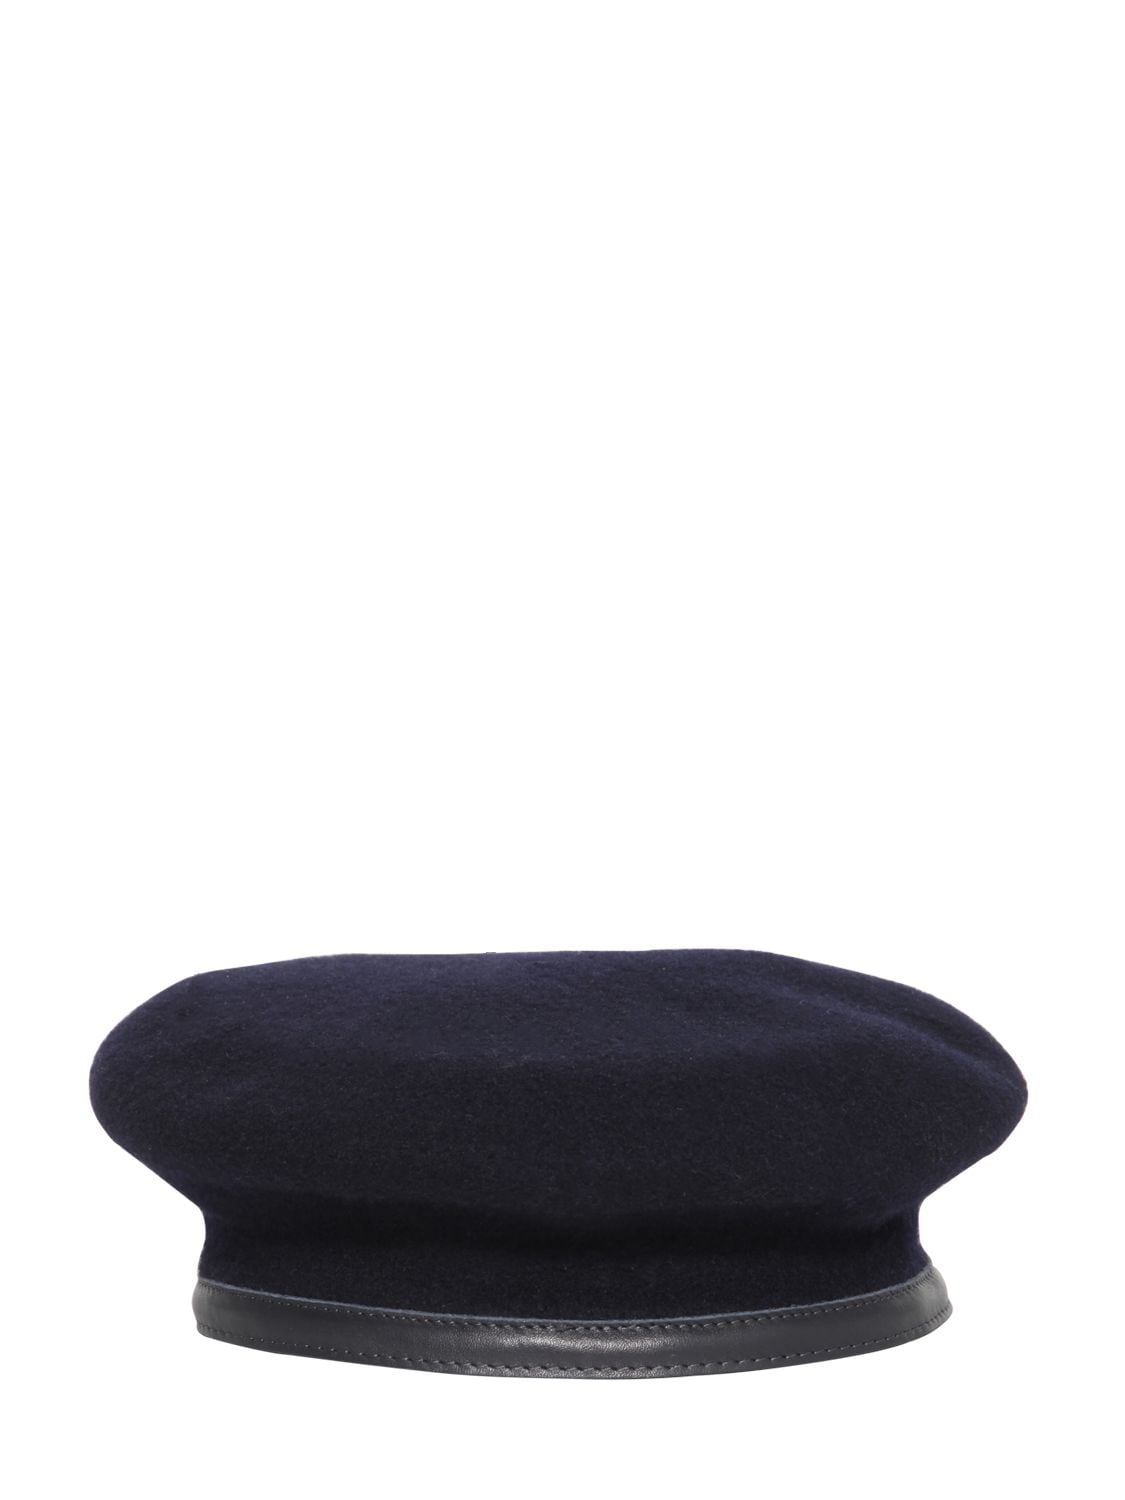 Ann Demeulemeester Flat Wool Hat W/ Leather Buckle In Black